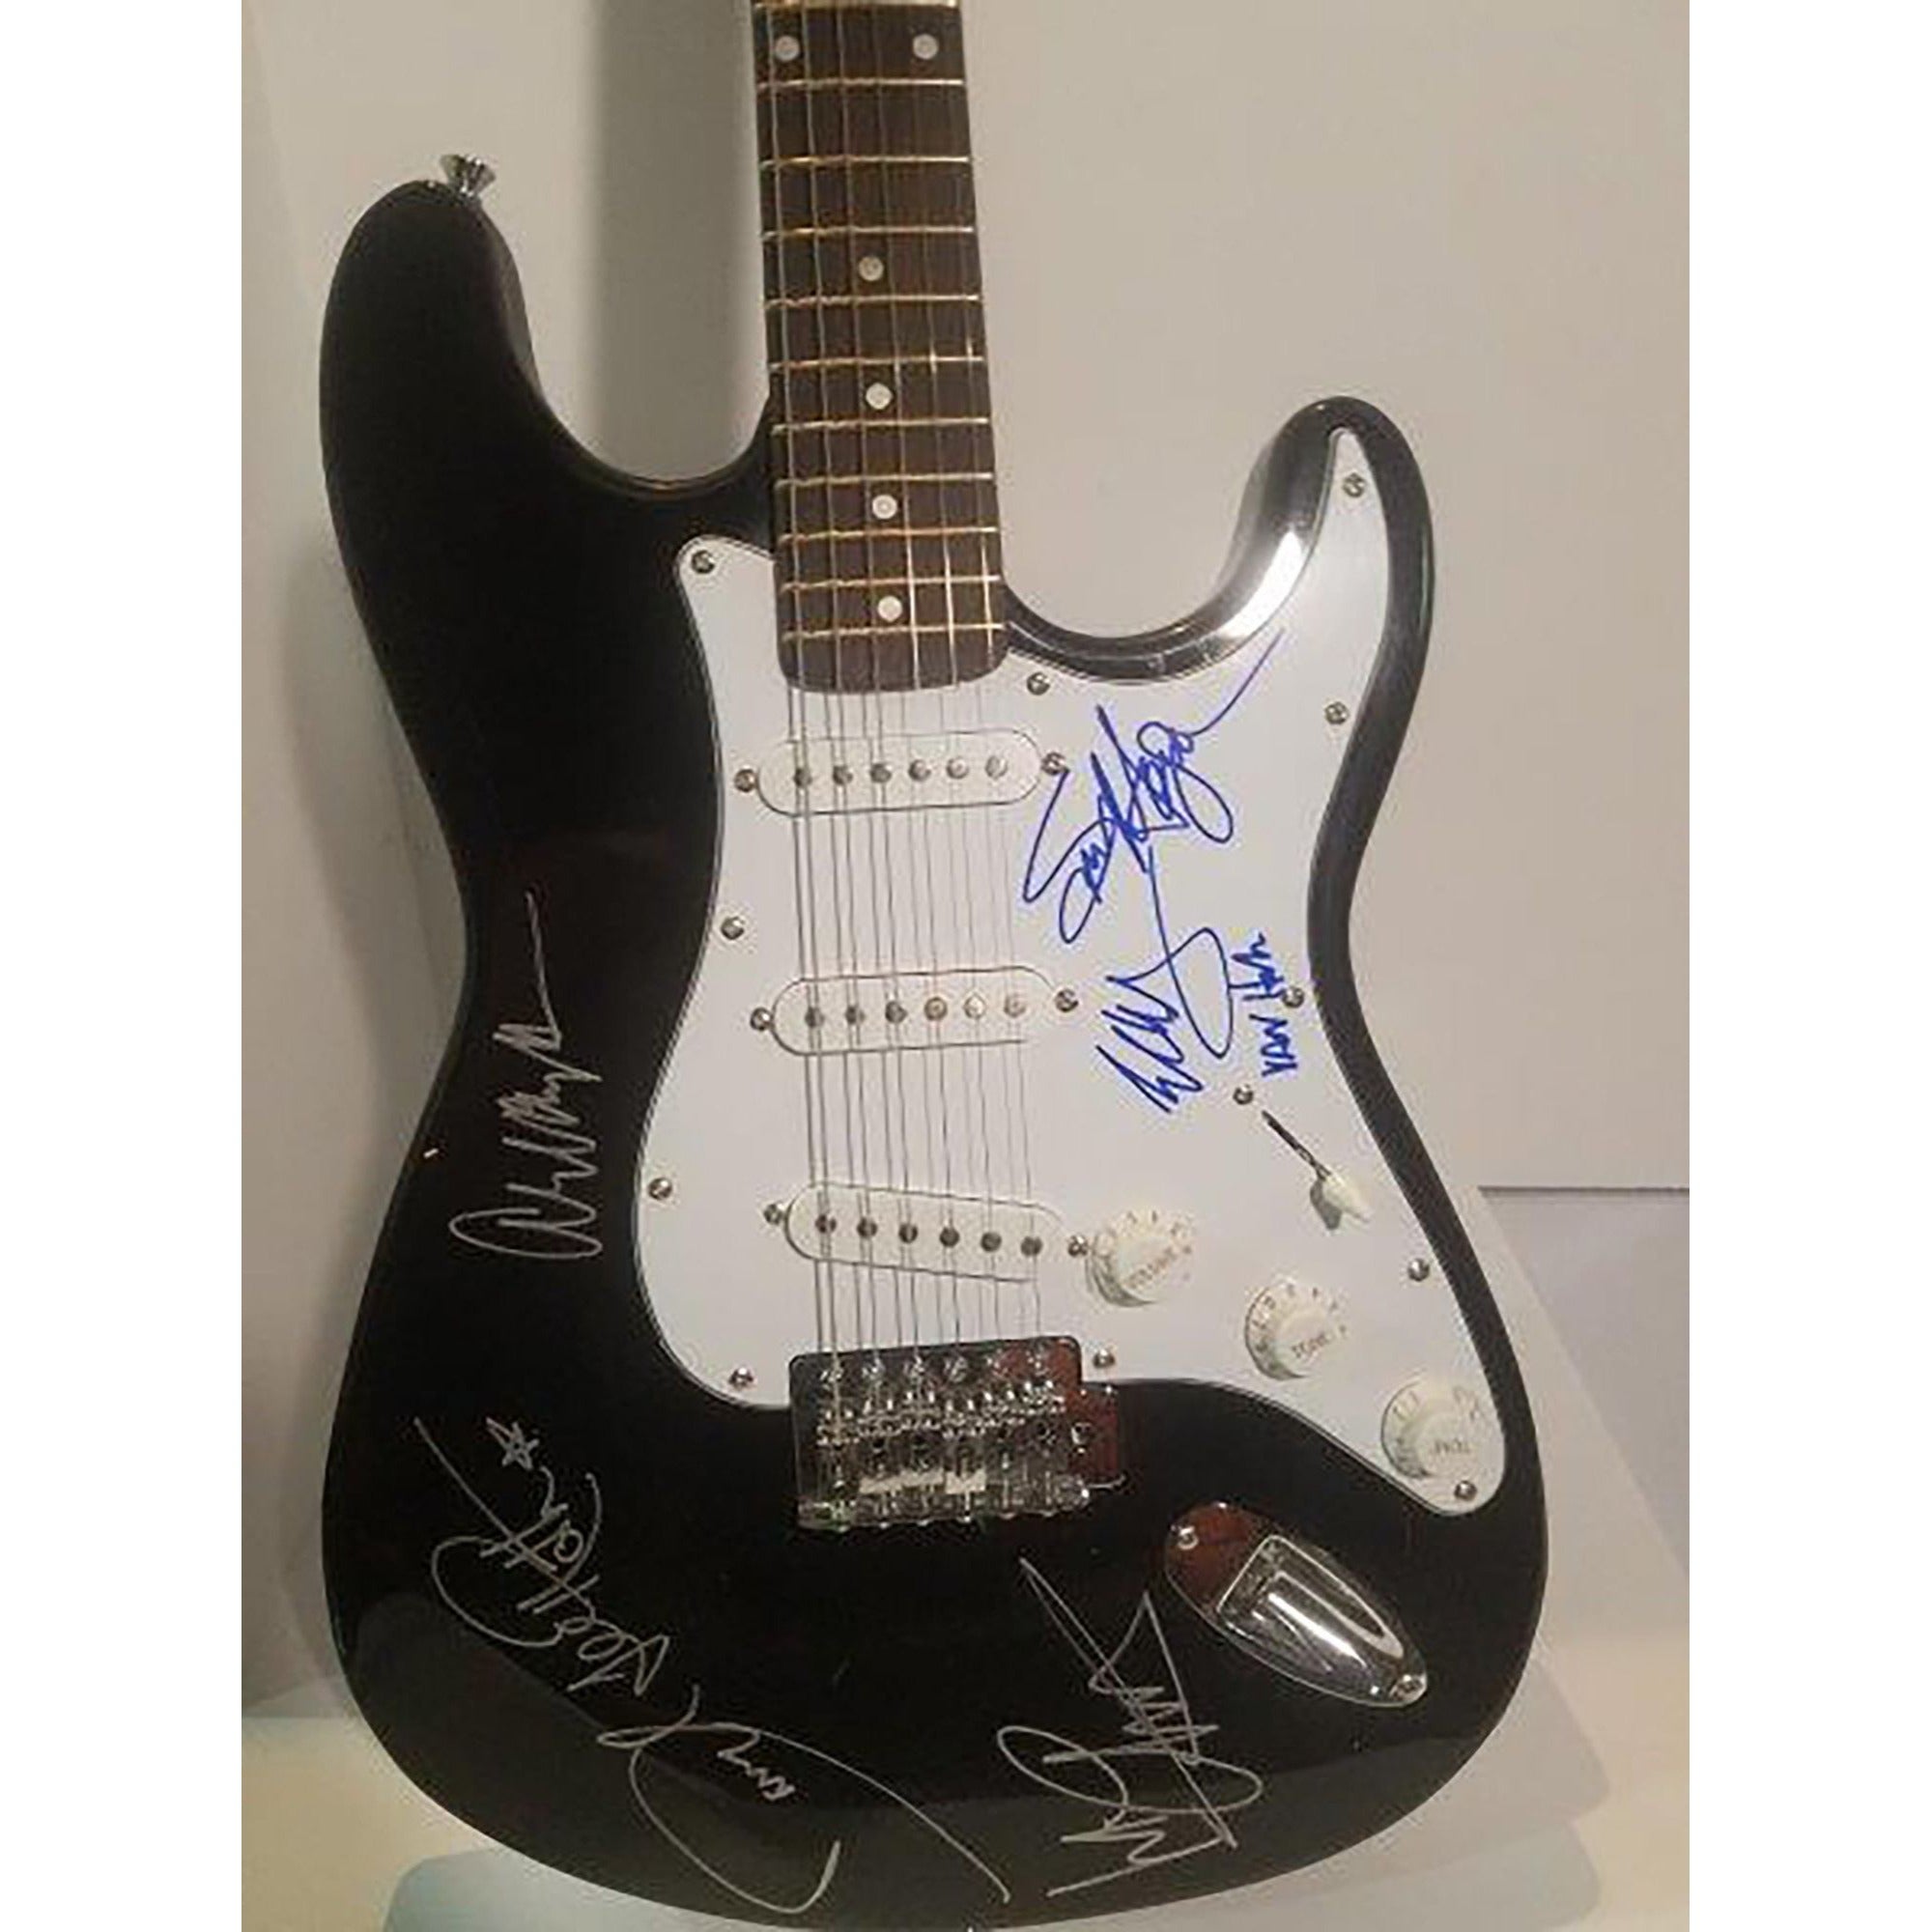 Eddie Van Halen, David Lee Roth, Sammy Hagar signed guitar with proof